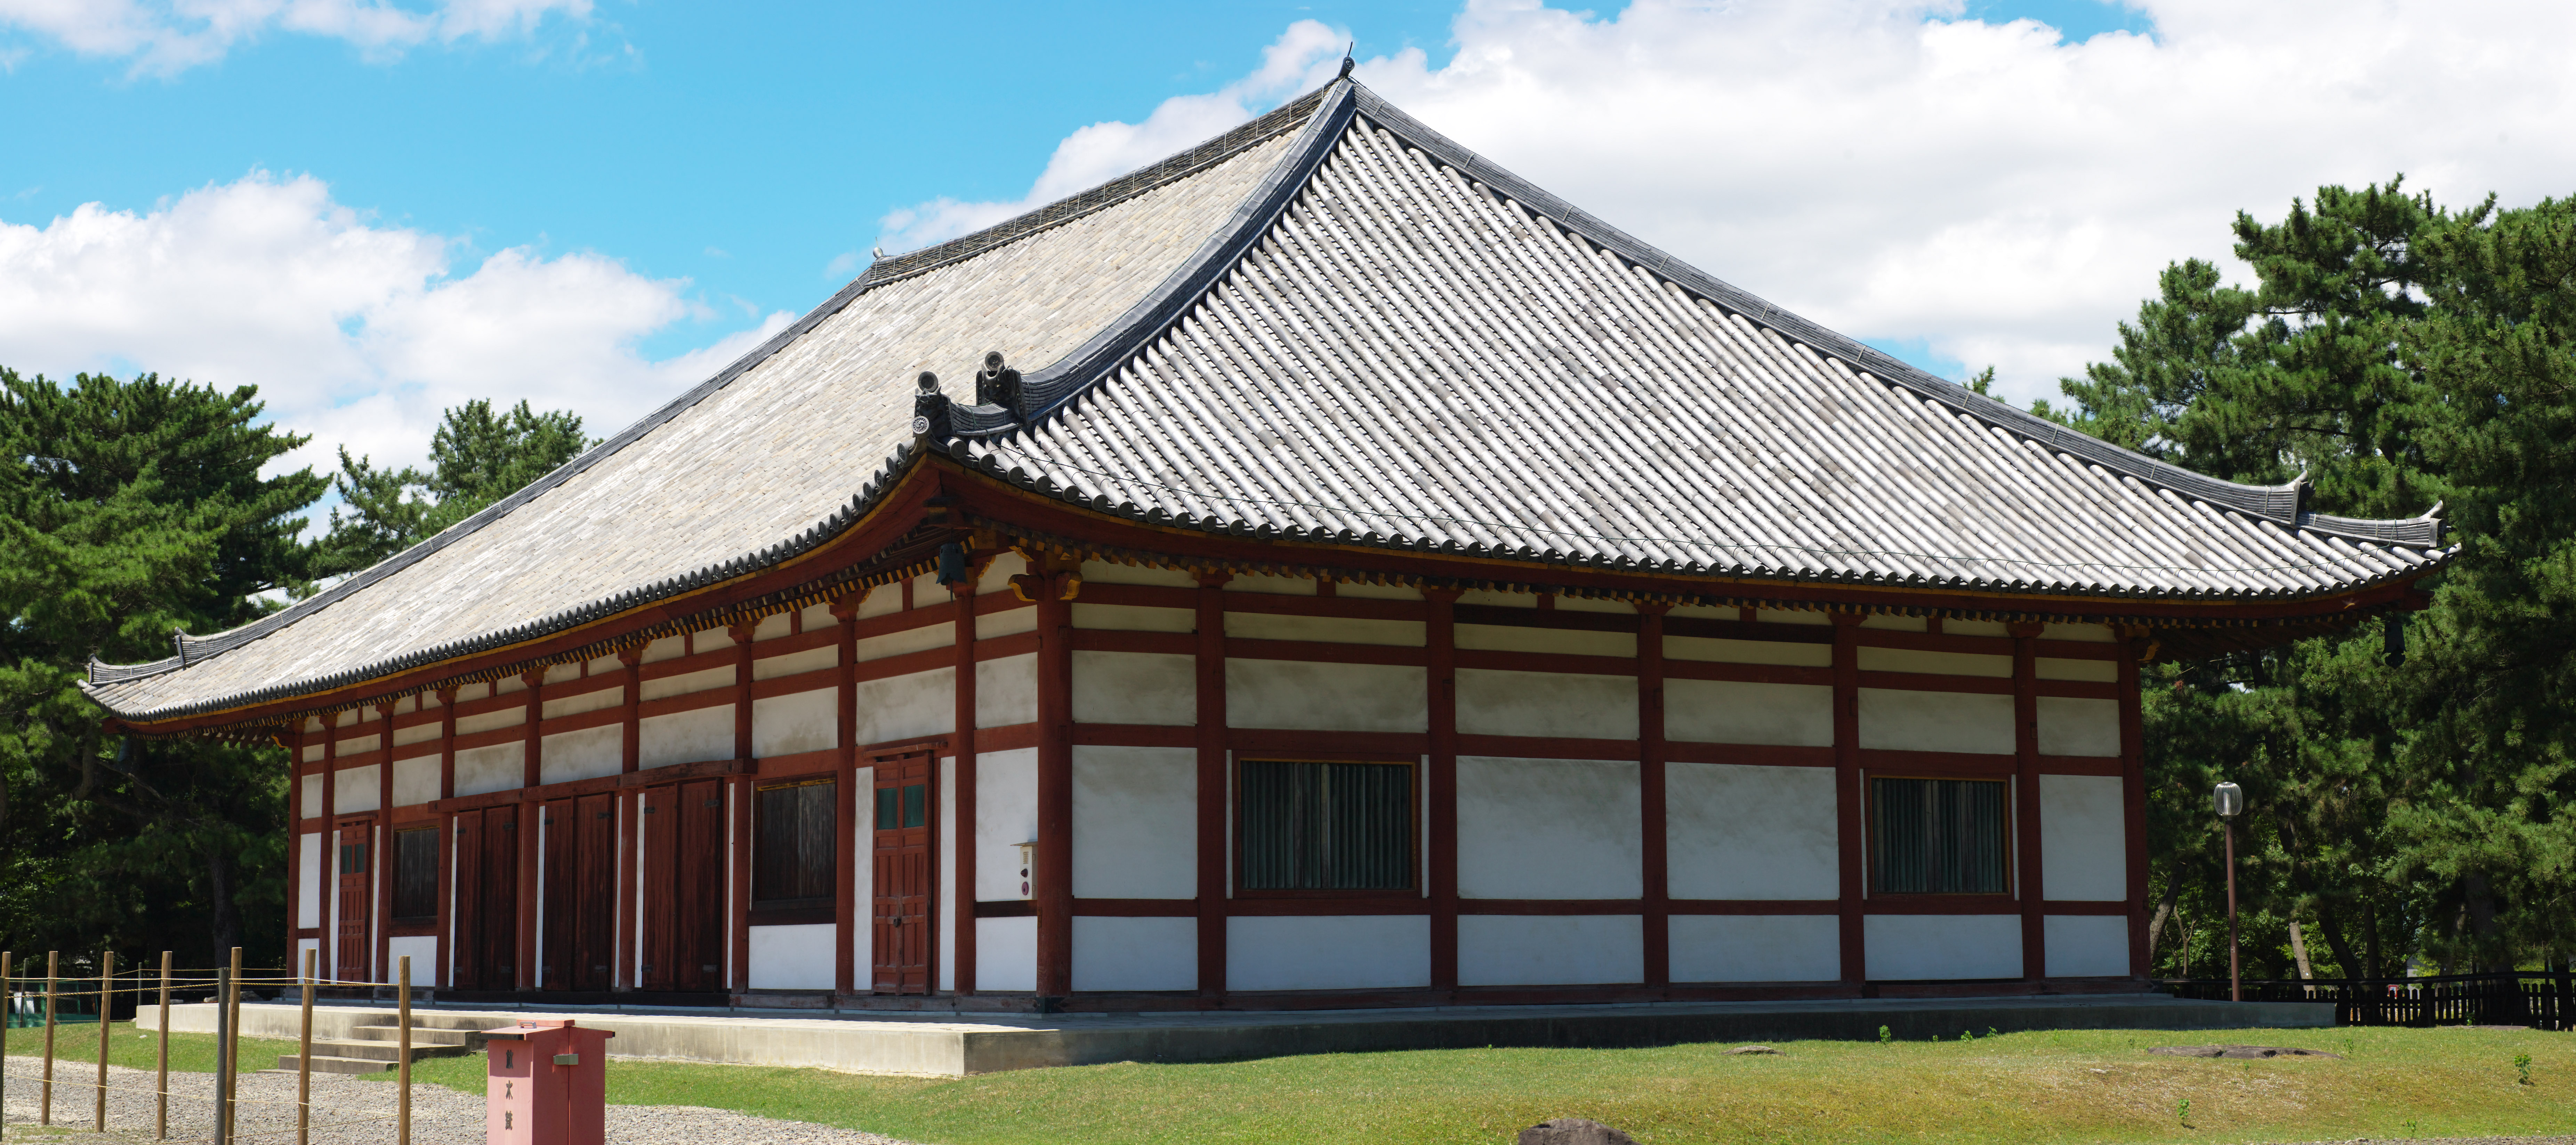 fotografia, material, livra, ajardine, imagine, proveja fotografia,Templo de Kofuku-ji templo interno temporrio, Budismo, edifcio de madeira, telhado, herana mundial